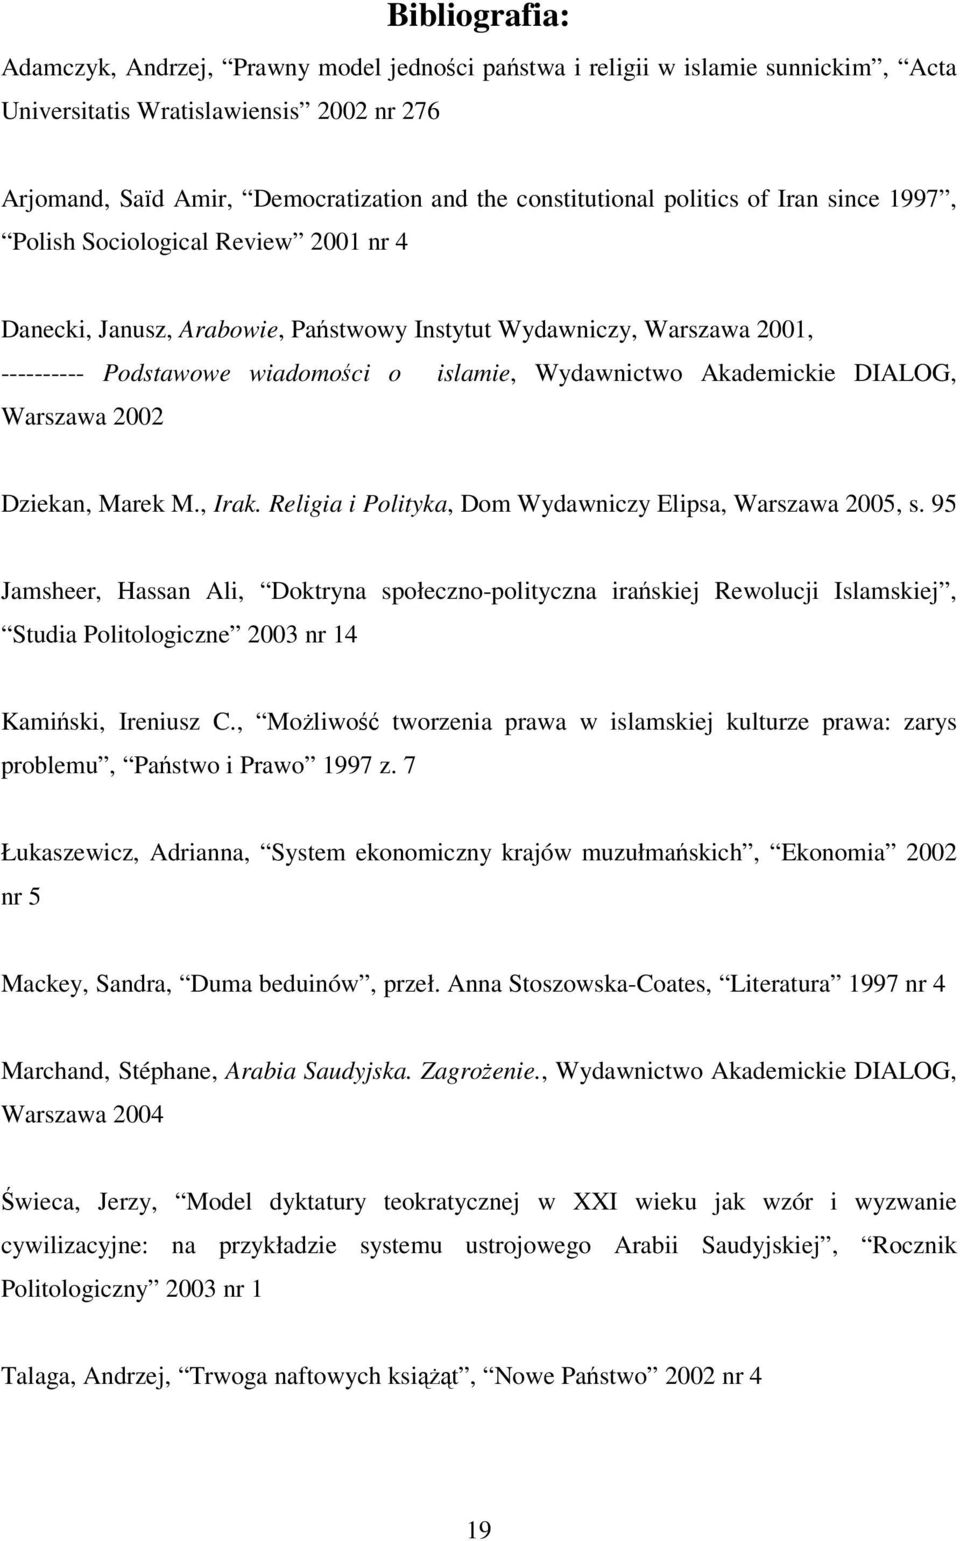 Wydawnictwo Akademickie DIALOG, Warszawa 2002 Dziekan, Marek M., Irak. Religia i Polityka, Dom Wydawniczy Elipsa, Warszawa 2005, s.